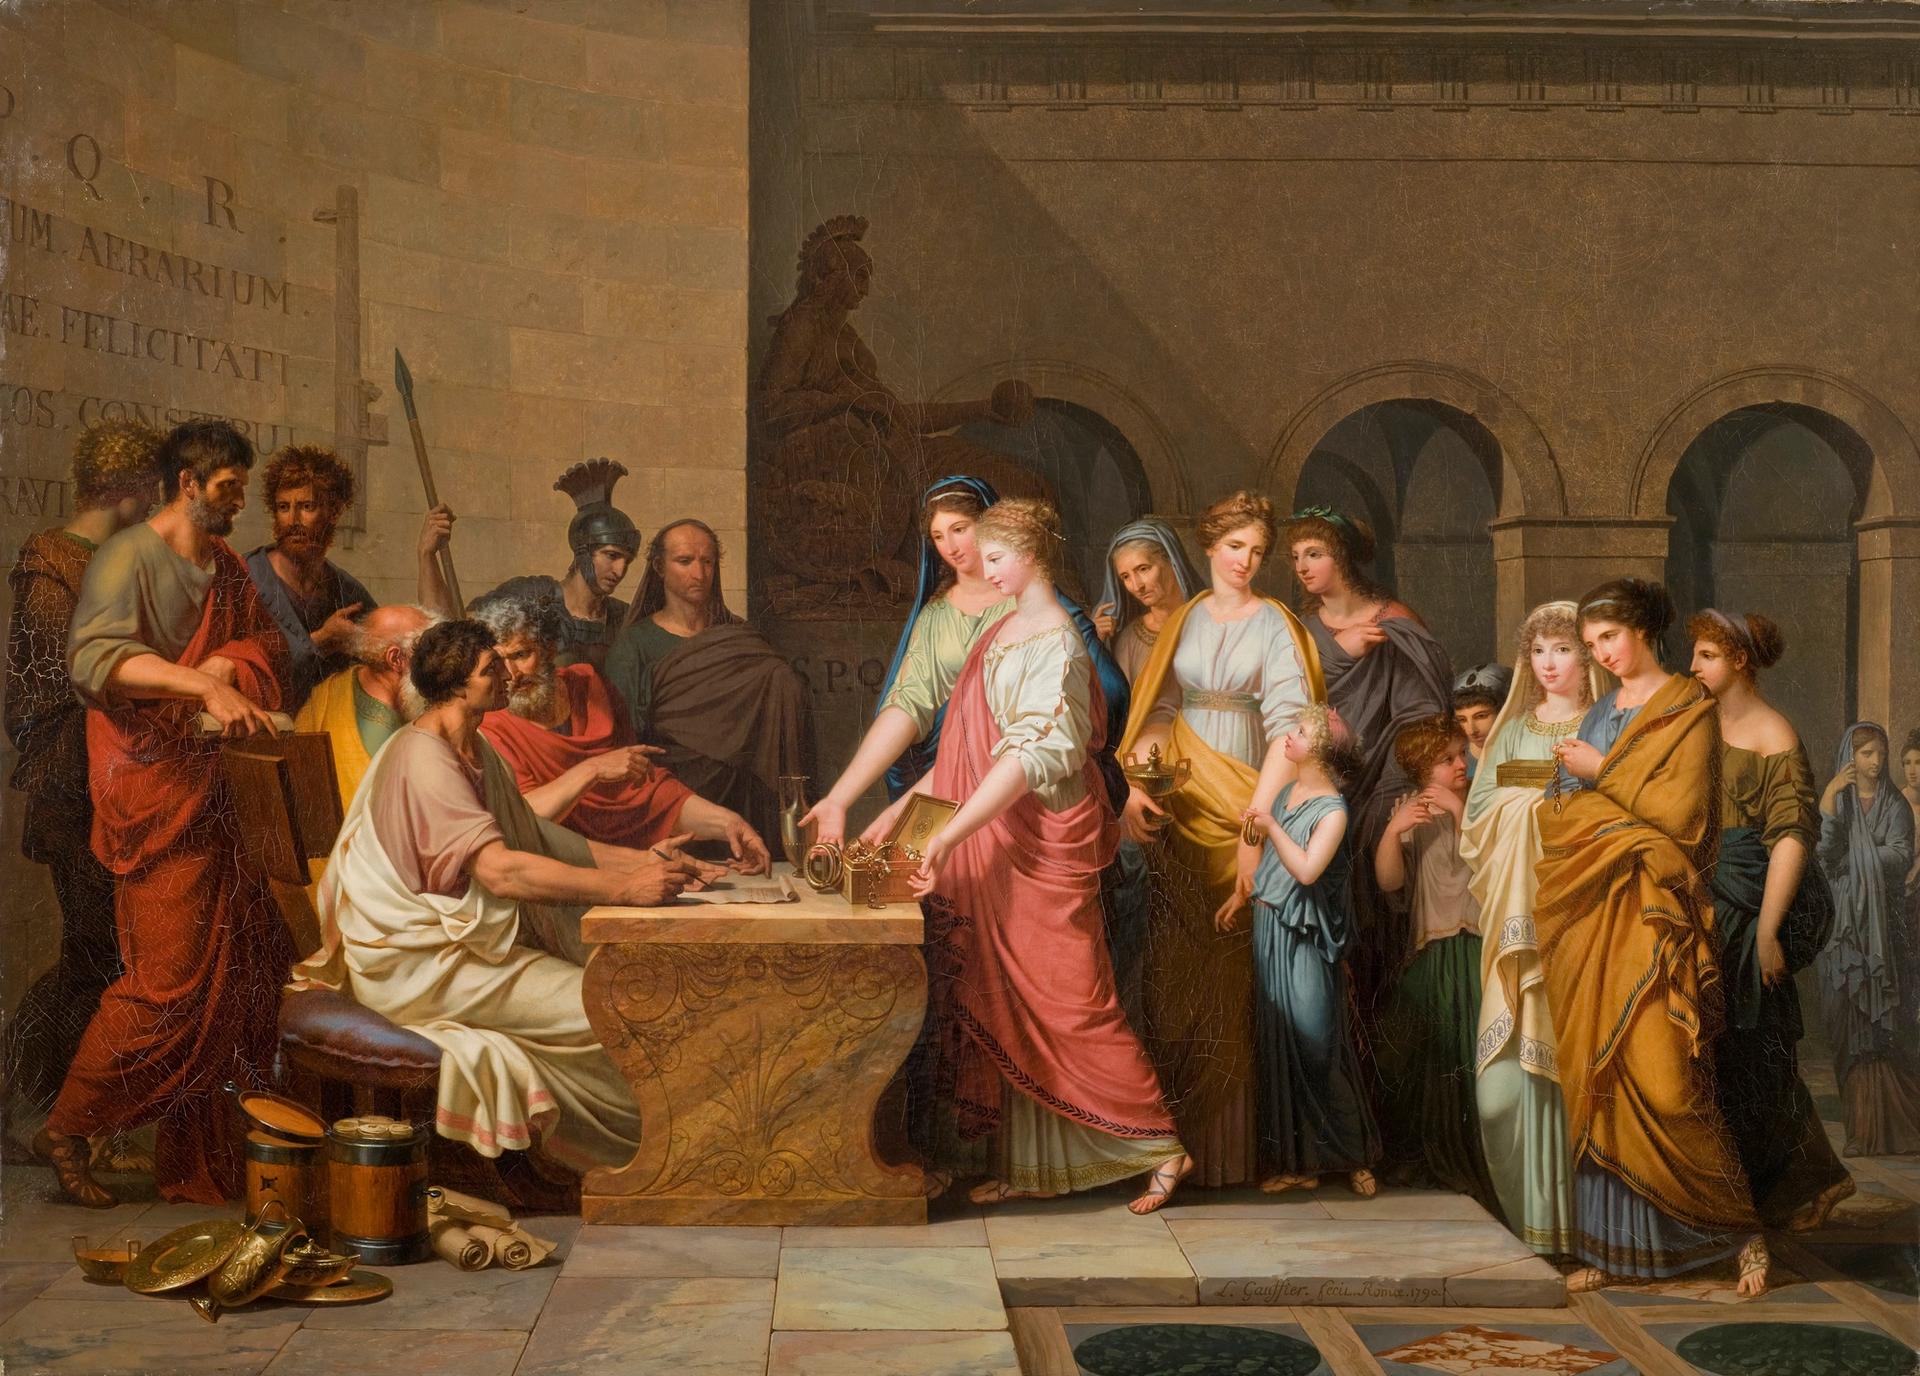 Louis Gauffier, La Générosité des femmes romaines, 1790, huile sur toile, Poitiers, musée Sainte-Croix. © Musées de Poitiers. Photo Christian Vignau